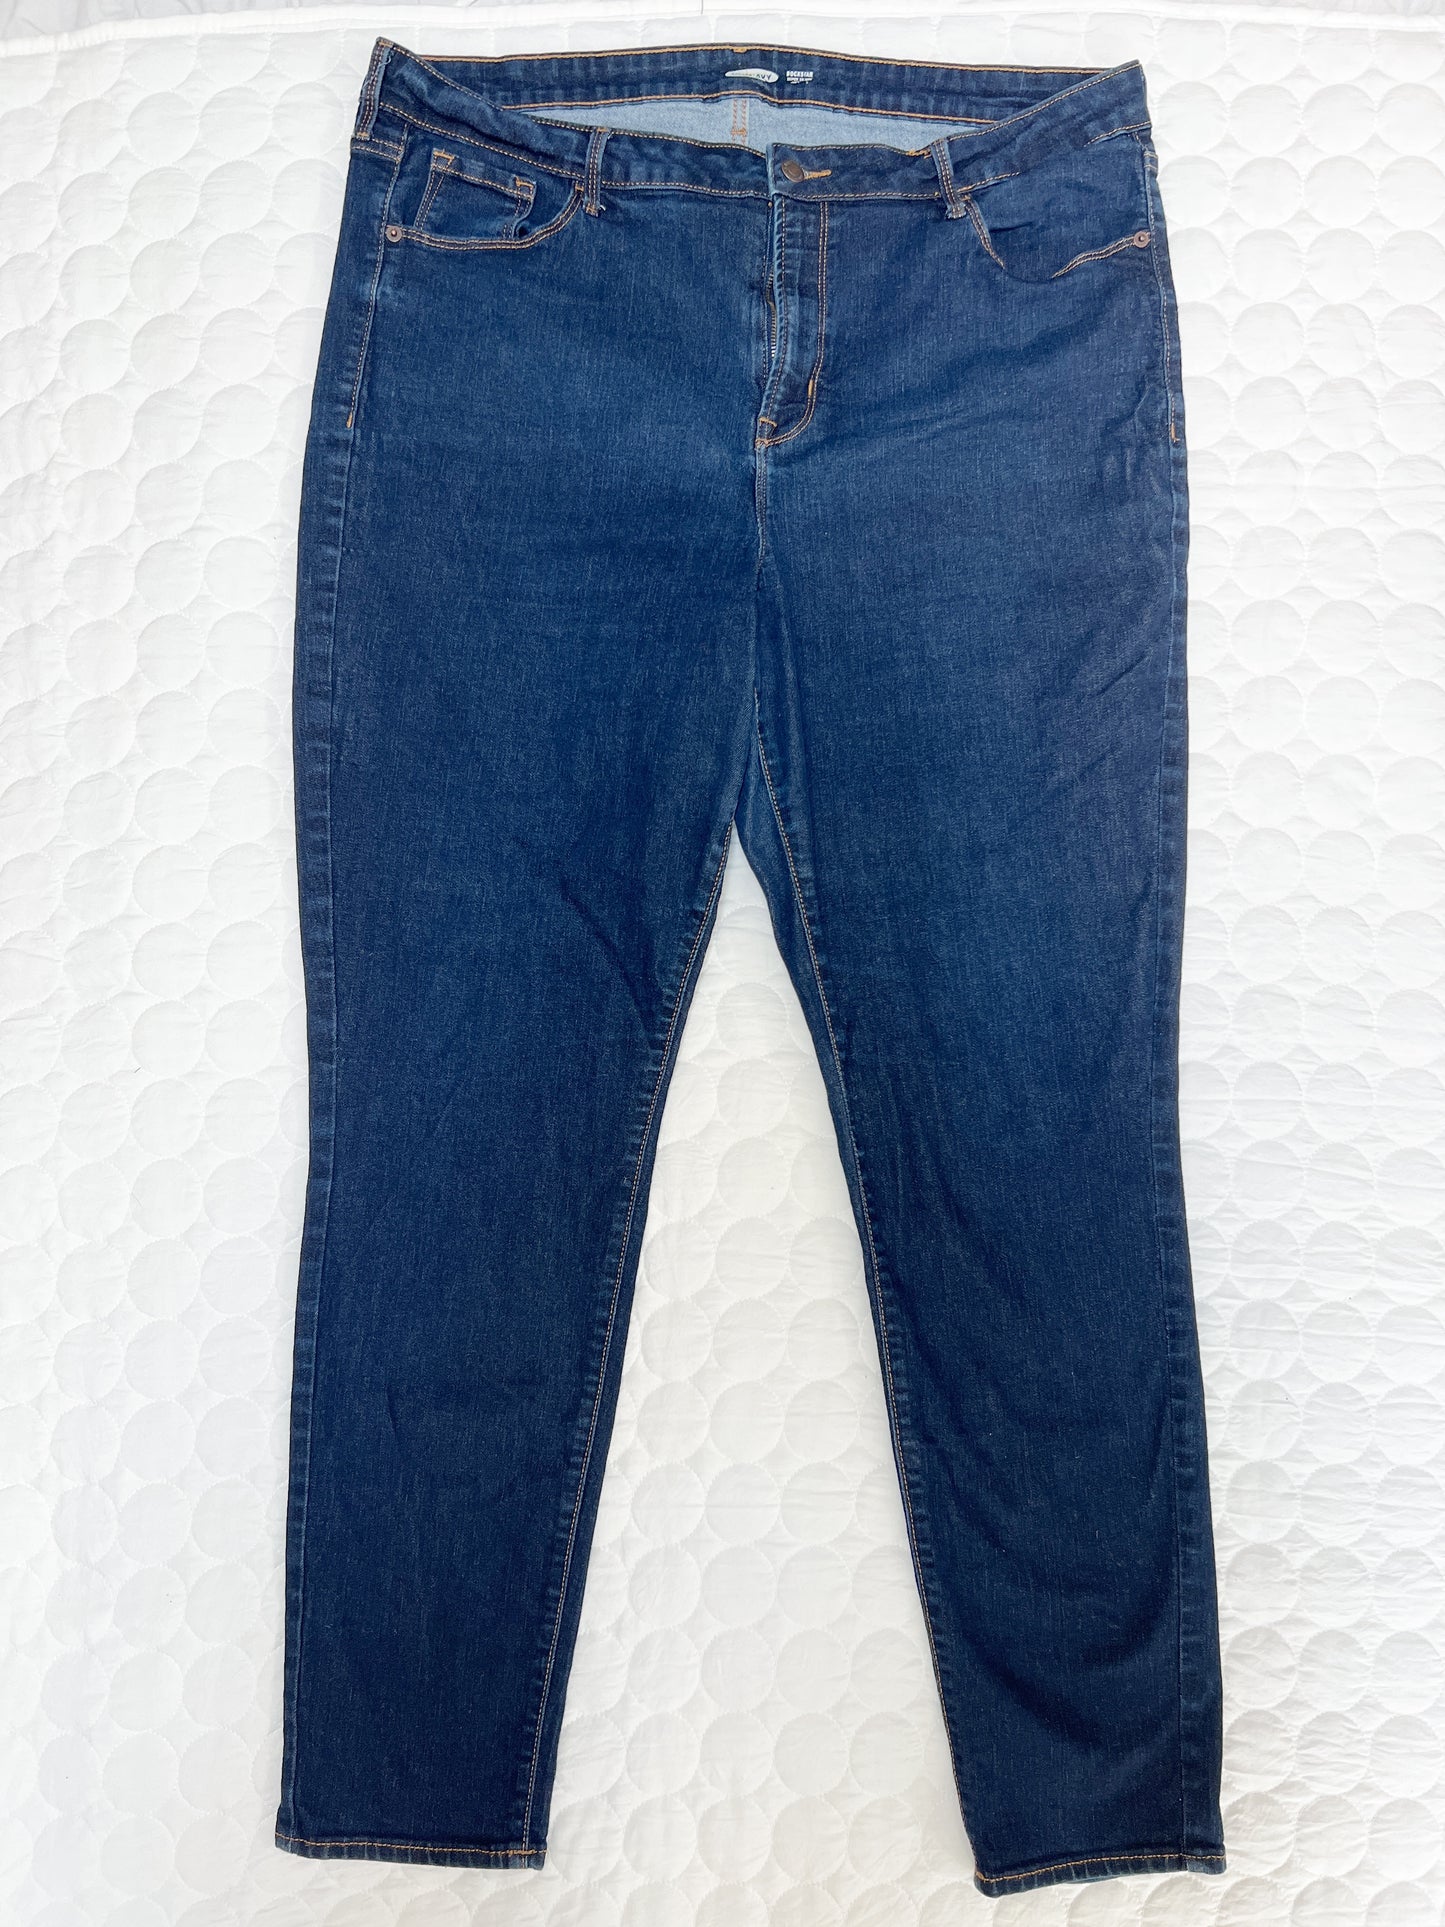 Size 18 tall Old Navy dark wash rockstar super skinny jeans, EUC